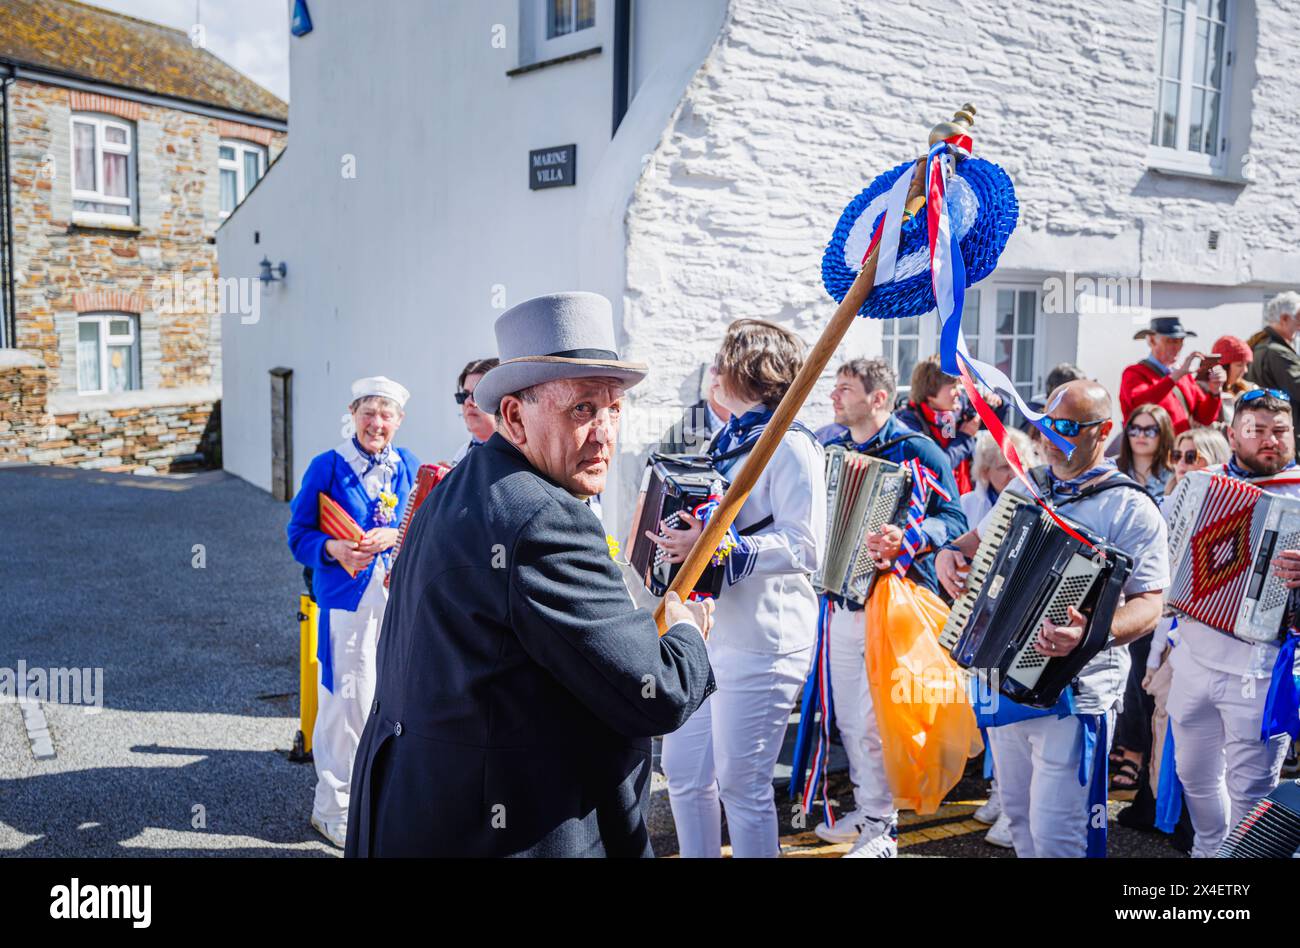 Il Blue Ribbon MC Doug Martyn al festival 'Obby' Oss, un tradizionale festival folk annuale del maggio a Padstow, una cittadina costiera in Cornovaglia, Inghilterra Foto Stock